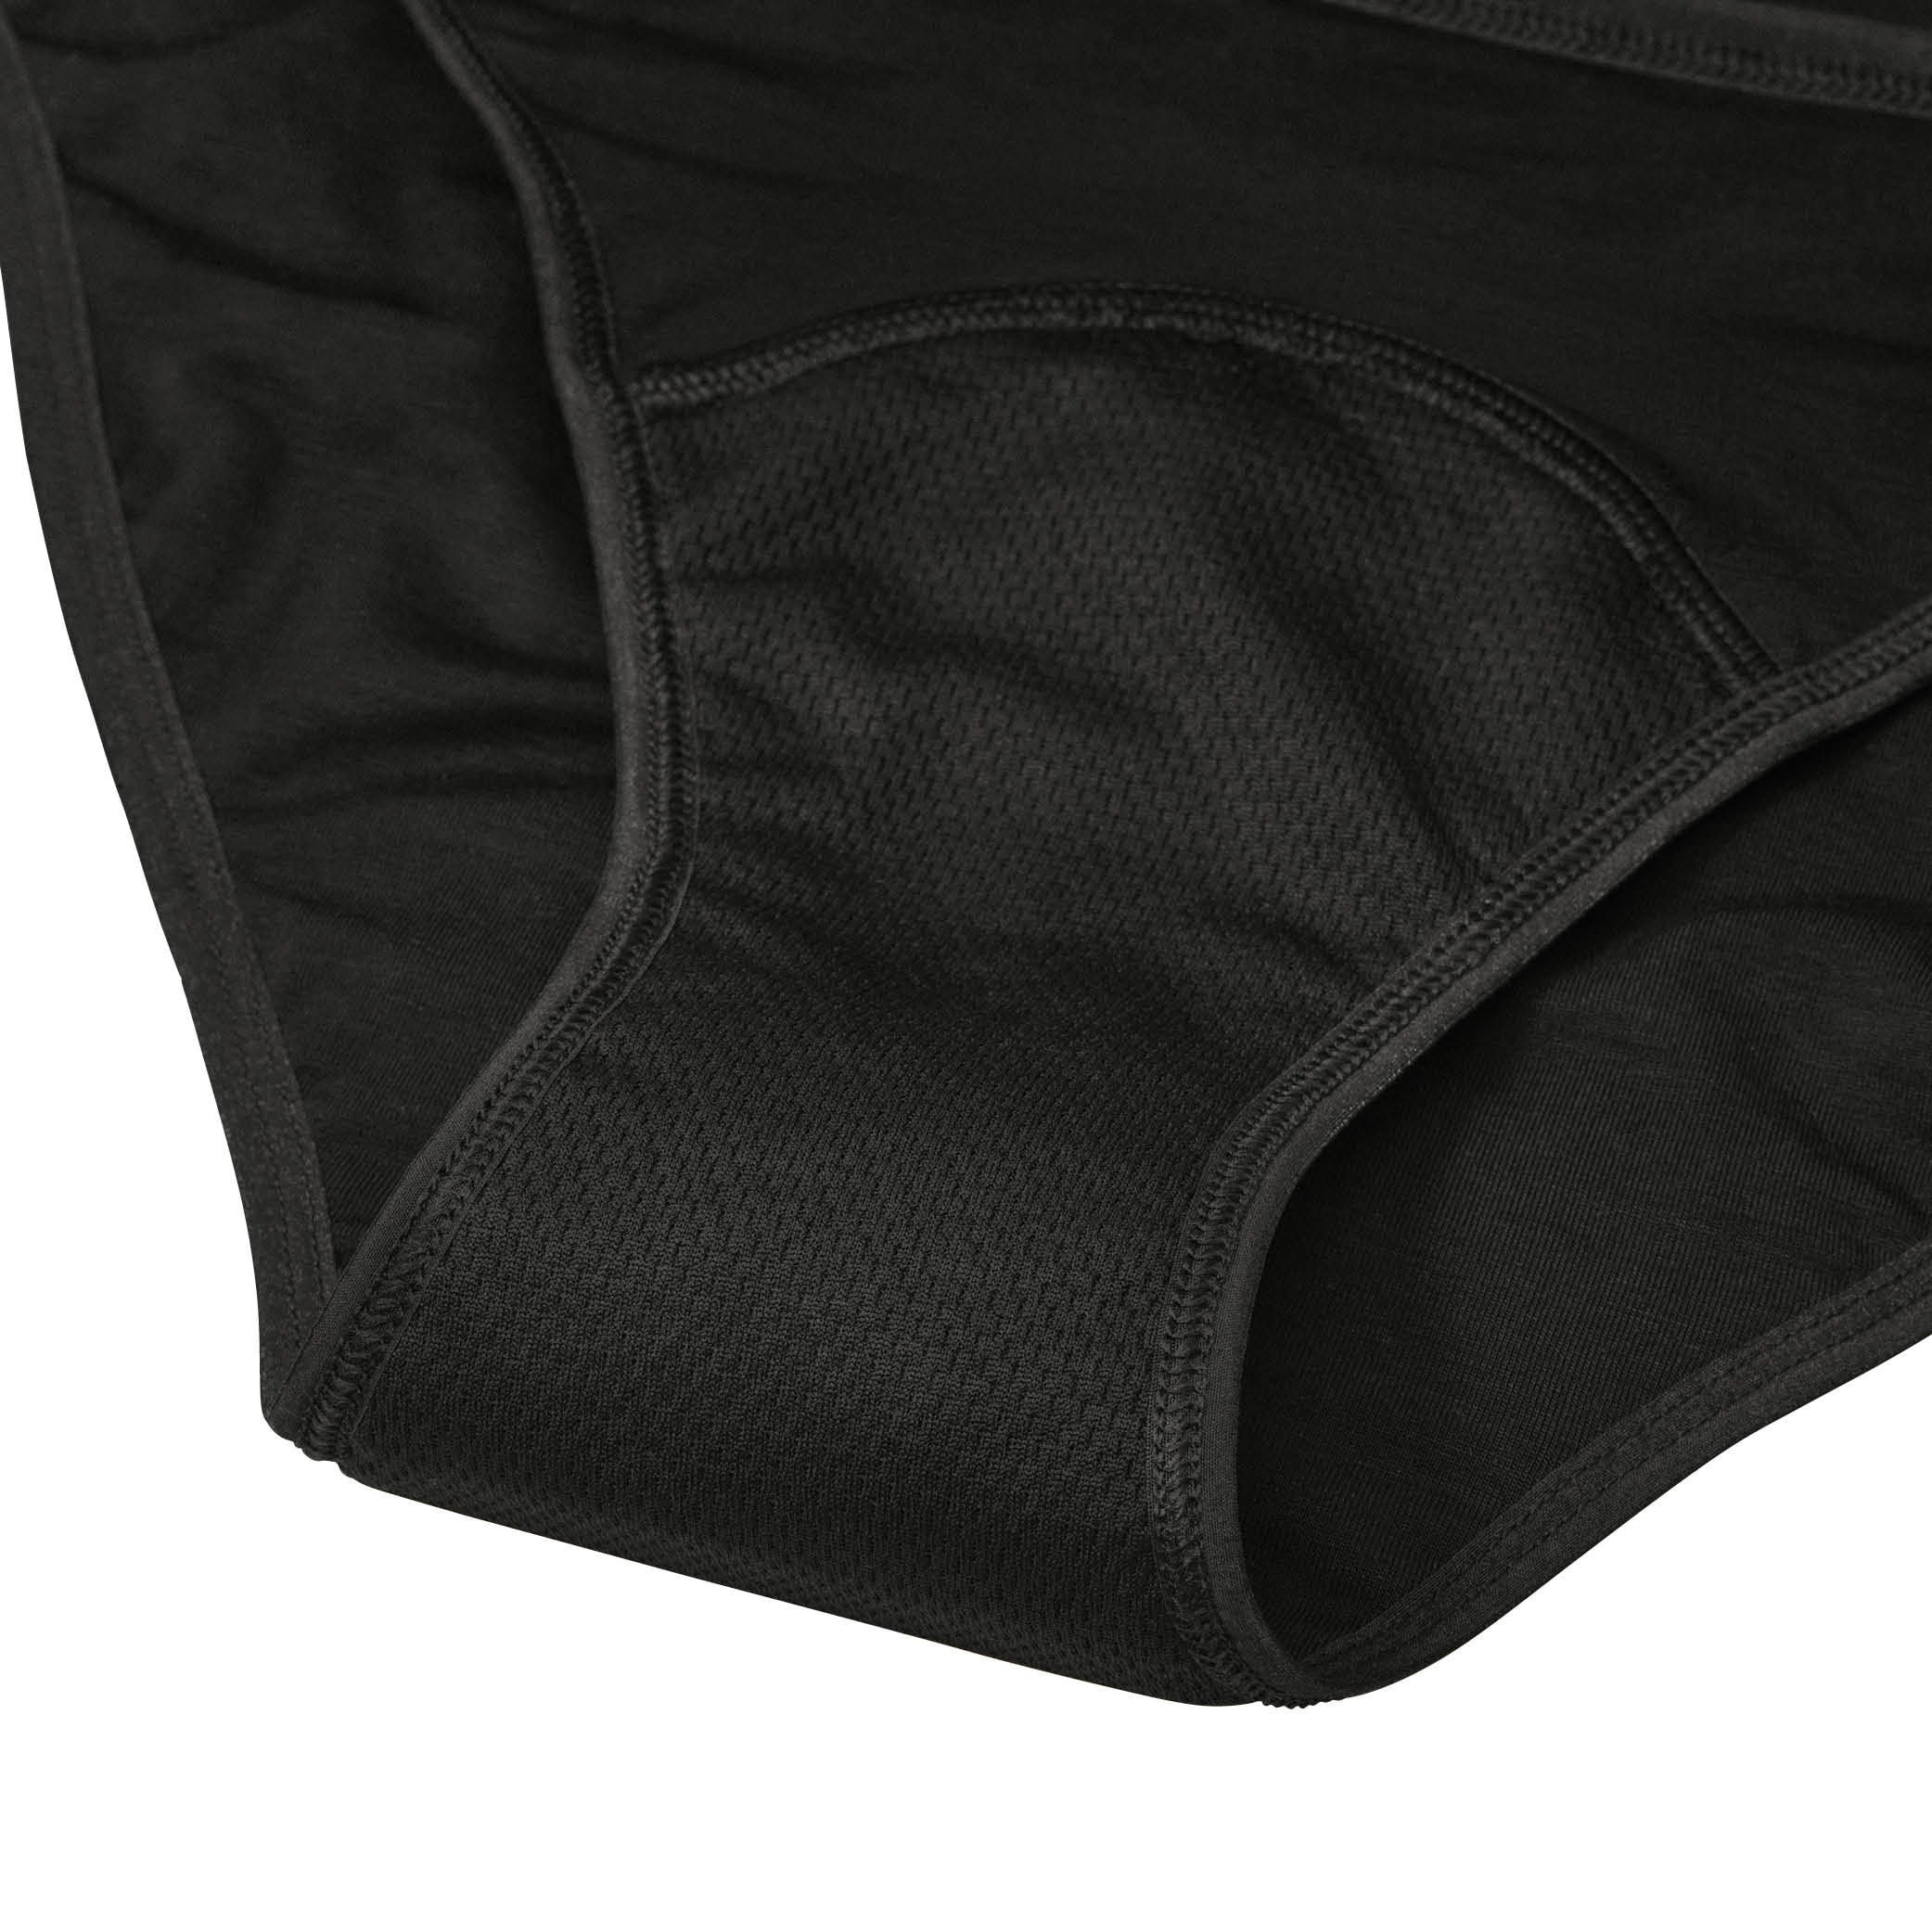 Period underwear svart storlek XXL